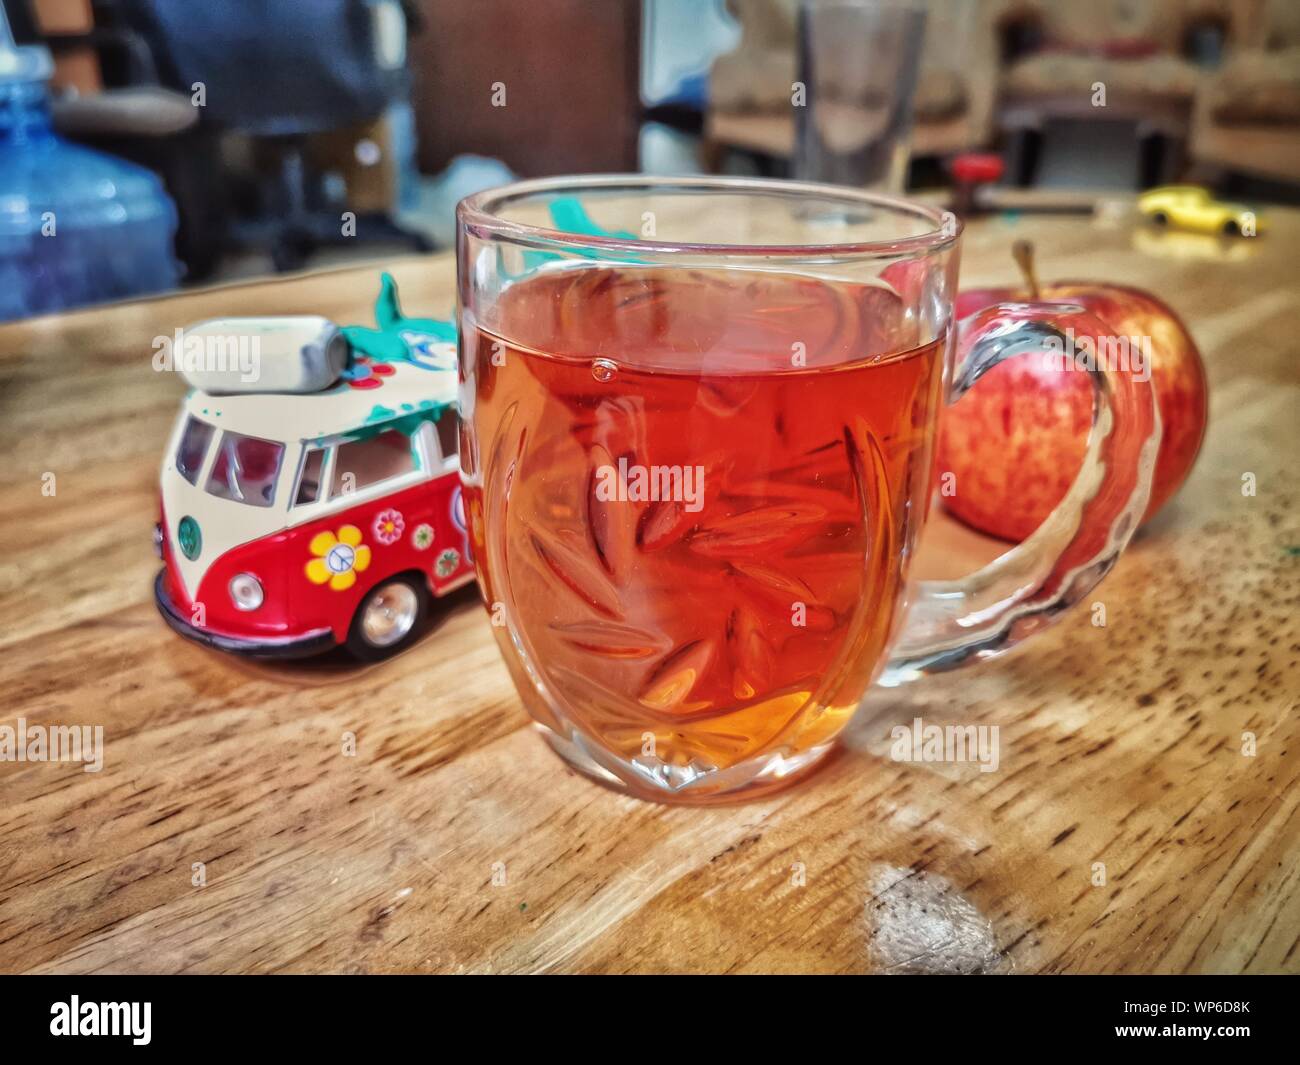 Roter Tee Glas mug Becher Spielzeug apple Tabelle blur Hintergrund Ton formen Vergangenheit Bild Stockfoto